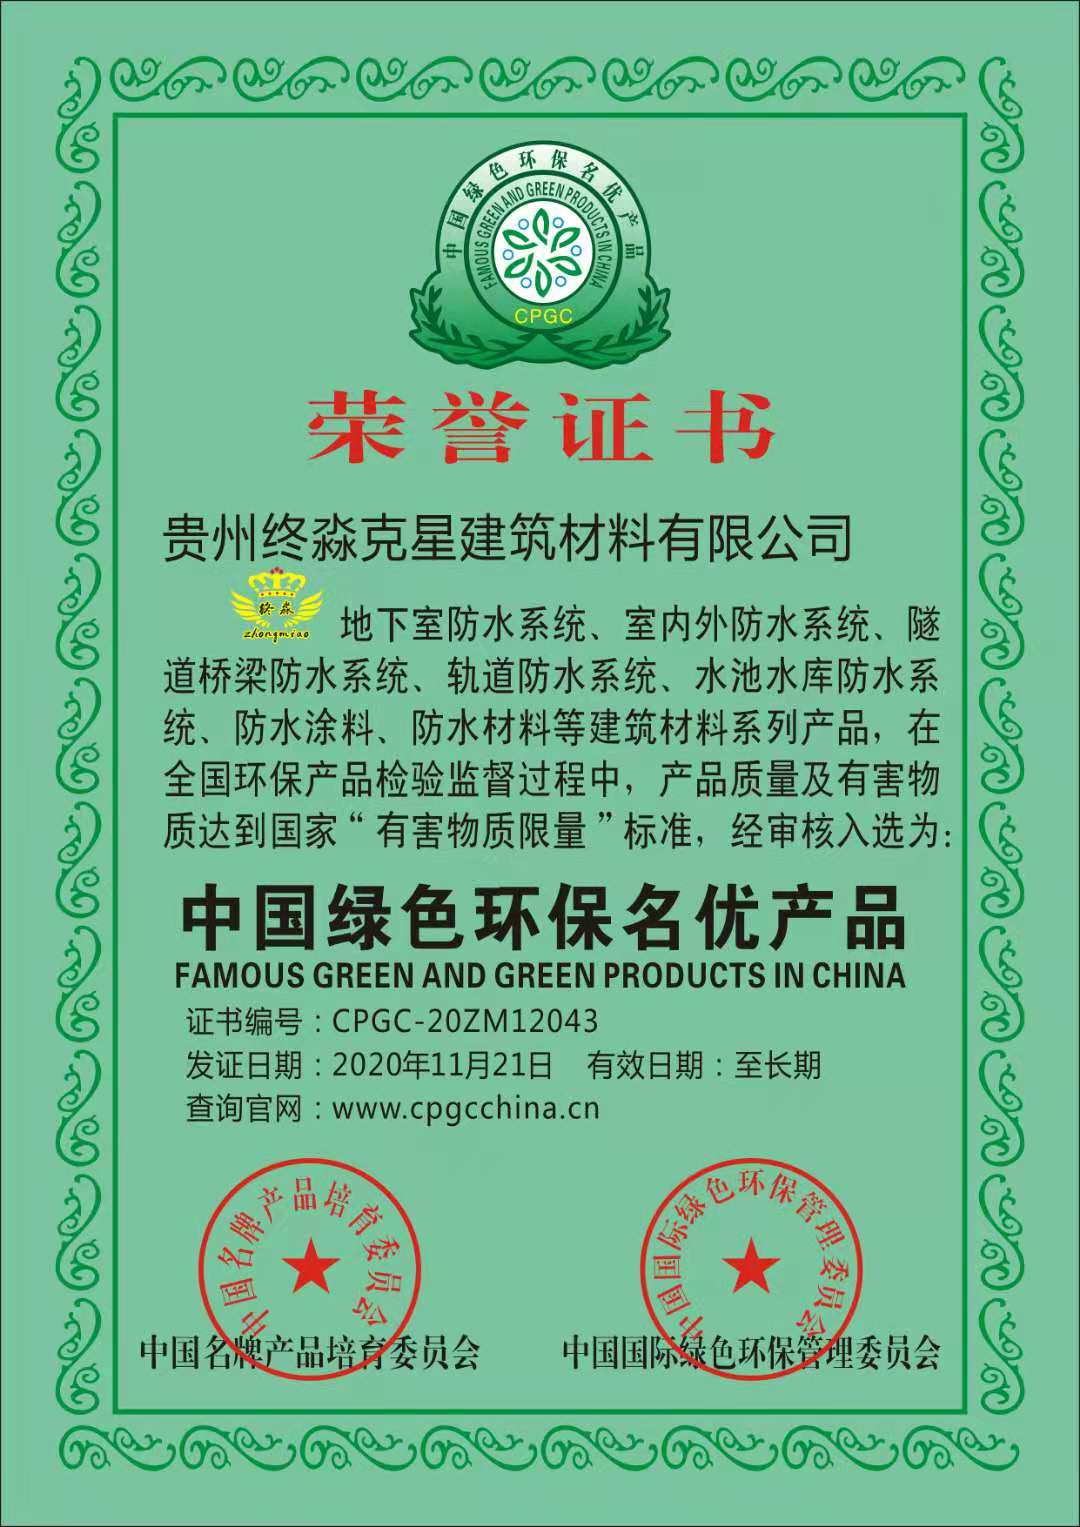 《中国绿色环保名优产品》荣誉证书